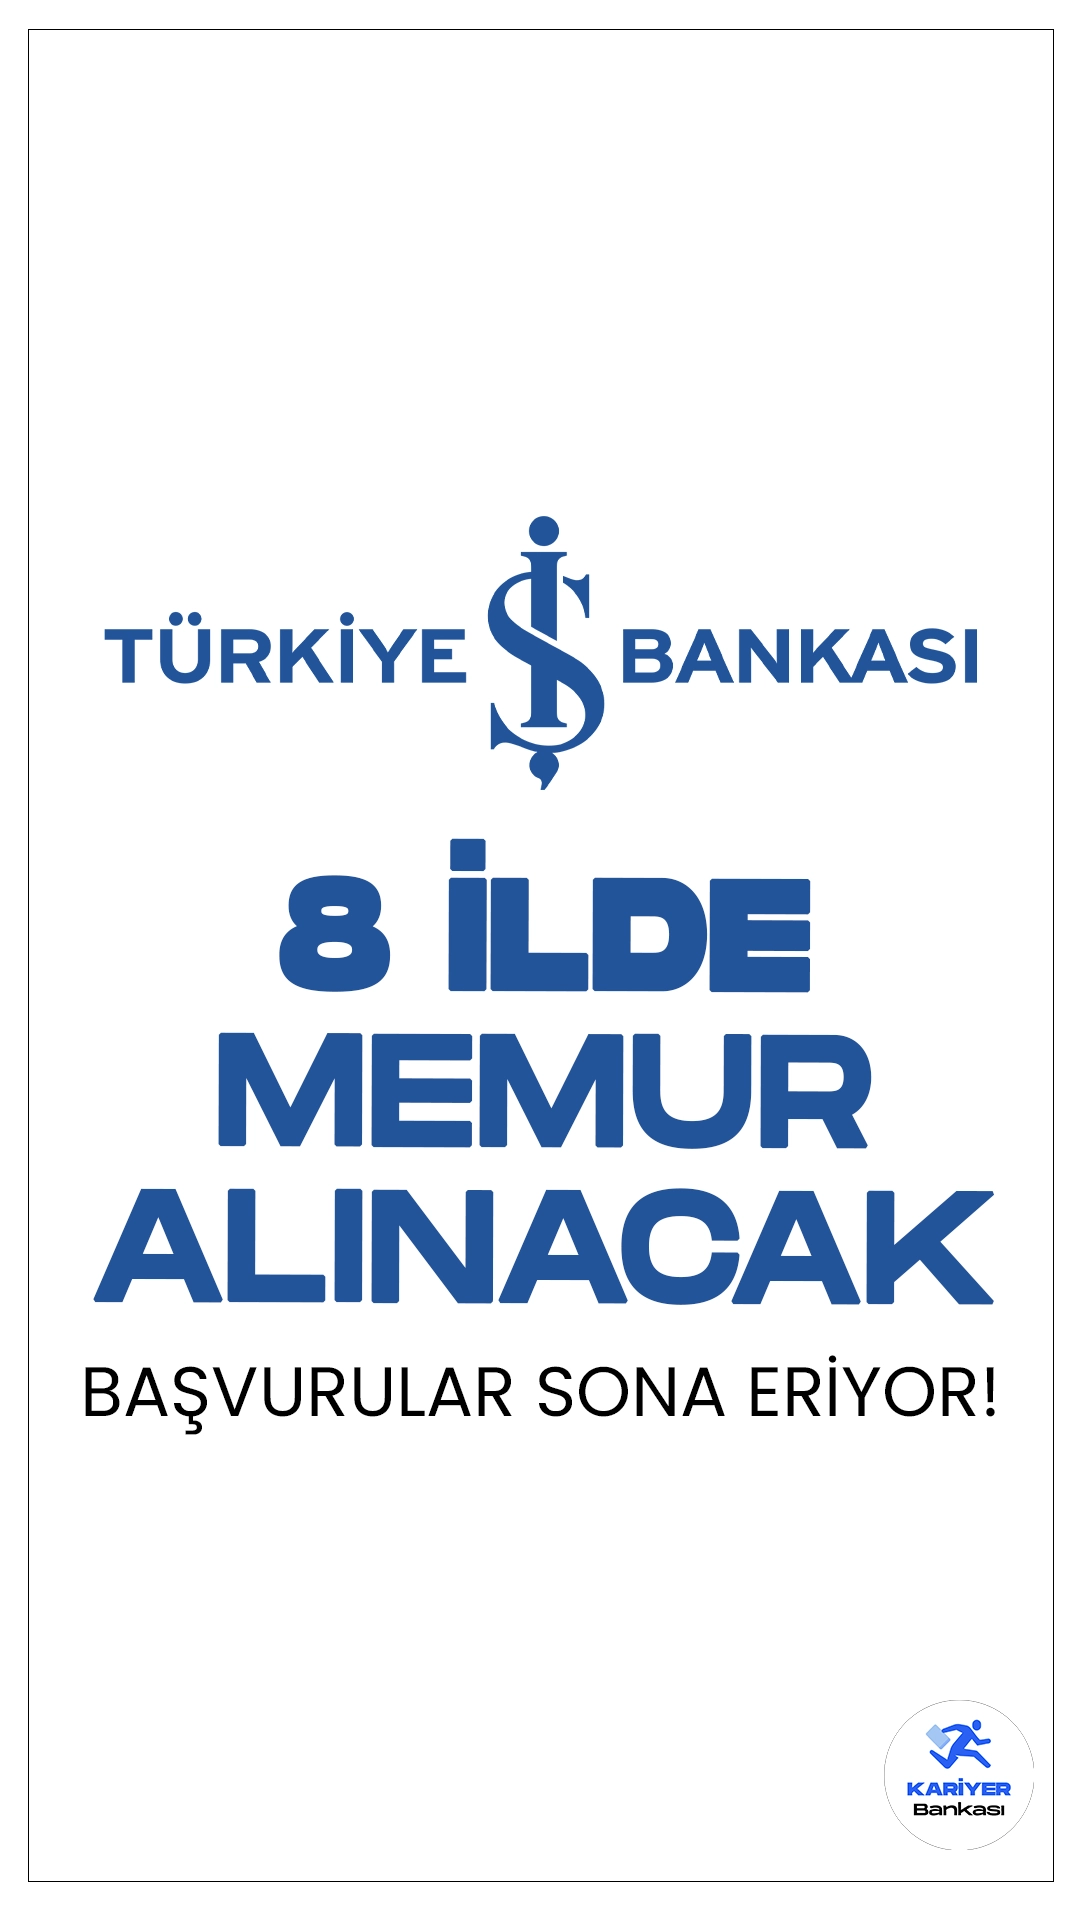 İş Bankası 8 İlde Memuru Alımı Başvuruları Sona Eriyor.Türkiye İş Bankası sayfasından yayımlanan duyuruda, Batman'ın Merkez, Çorum'un Alaca ve Sungurlu, Gaziantep'in Merkez, Isparta'nın Yalvaç, Kırklareli'nin Babaeski, Malatya'nın Merkez, Siirt'in Merkez, Şırnak'ın Cizre ilçelerinde bulunan İş Bankası Şubelerinde temel bankacılık hizmetlerini yerine getirmek üzere Memur pozisyonunda görevlendirilecek personel alımı yapılacağı aktarılmış, başvurular 27 Mayıs itibarıyla başlamıştı. İşlemler bugün (30 Mayıs) sona eriyor. İşte şartlar ve başvuru sayfası..